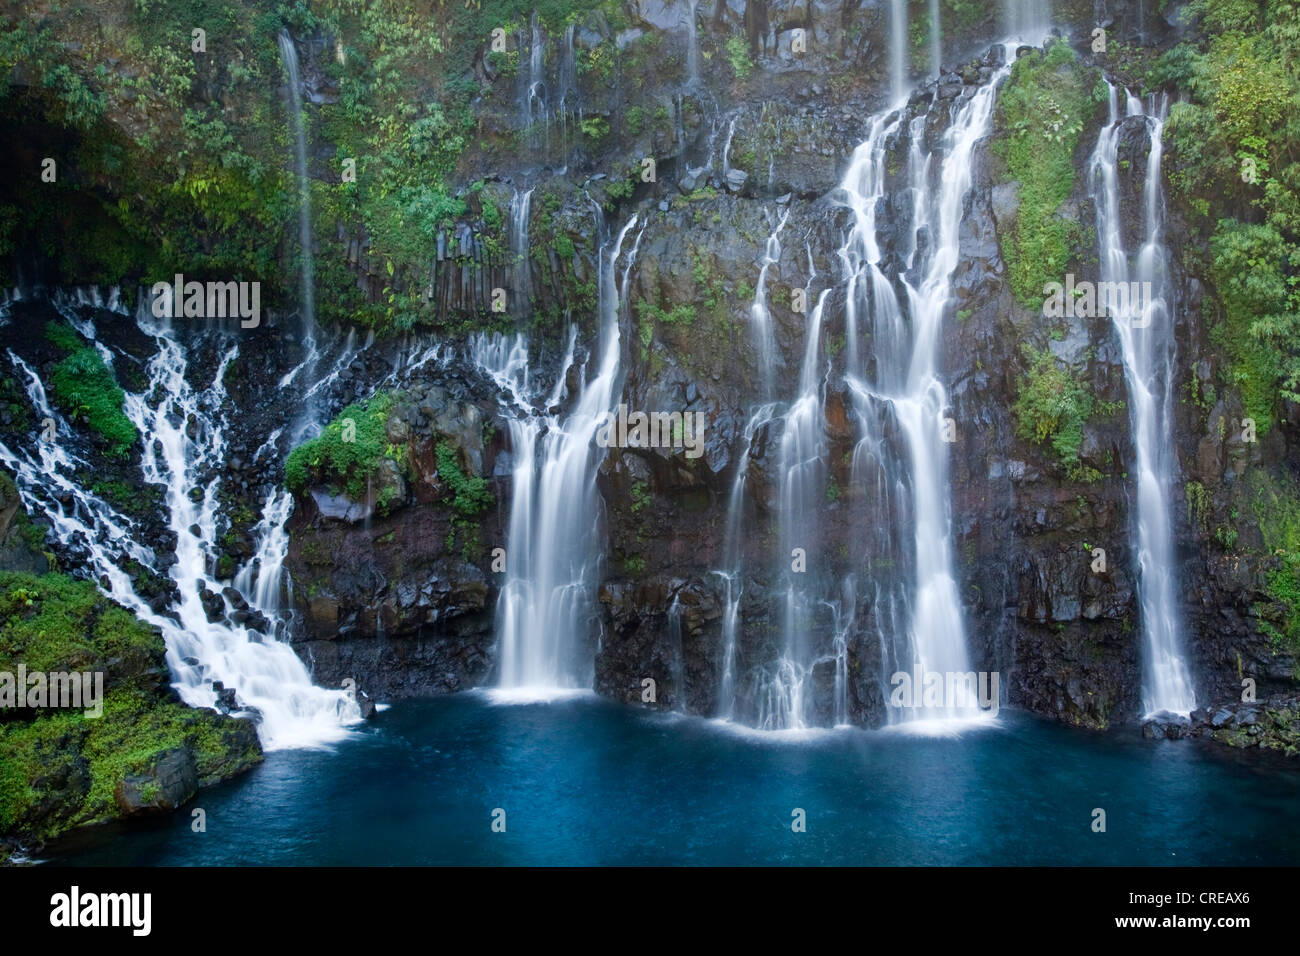 Cascada de la Grand Ravine cascadas en Grand Galet, isla de La Reunion, el Océano Índico Foto de stock